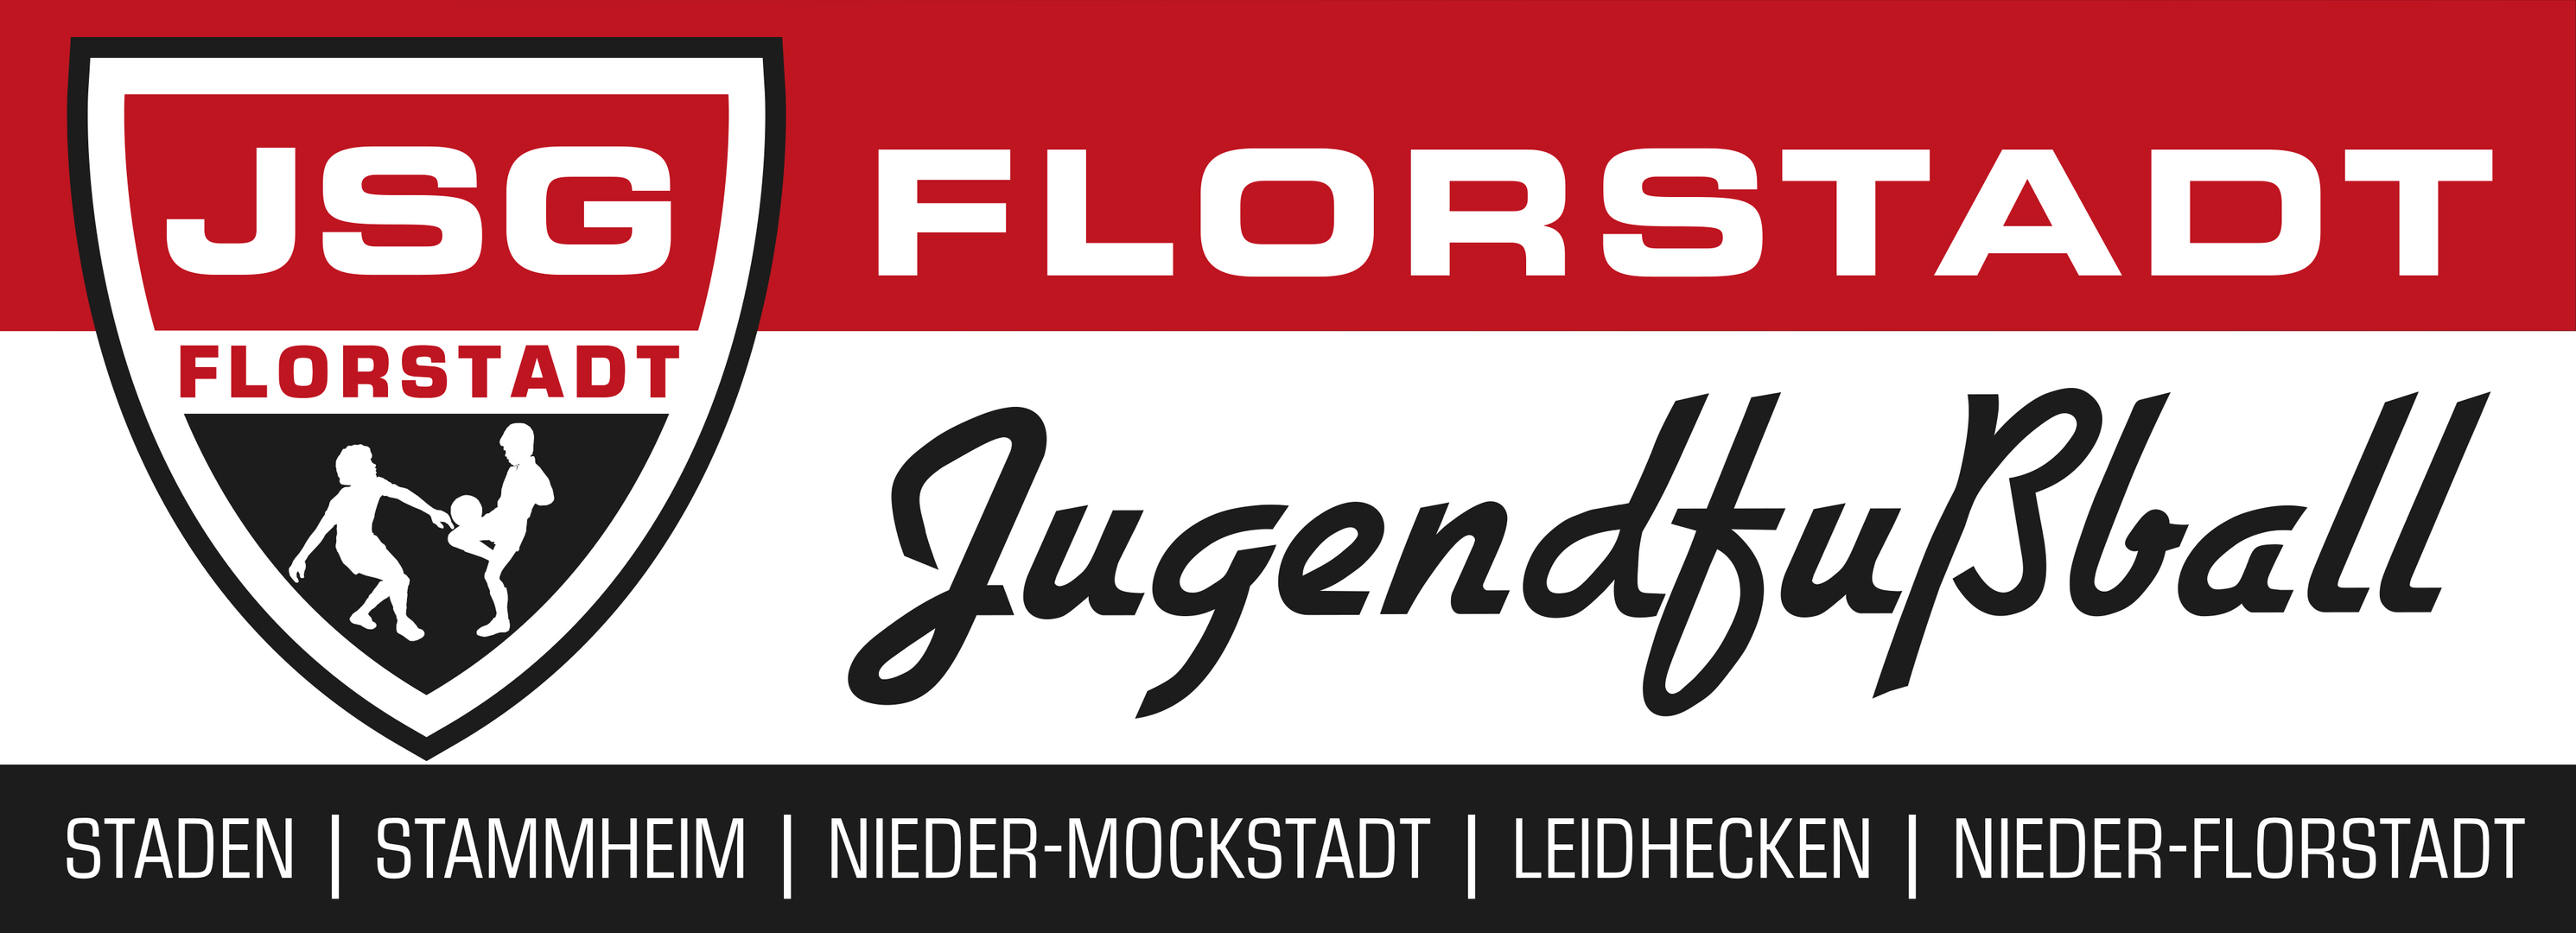 Der Verein | JSG Florstadt